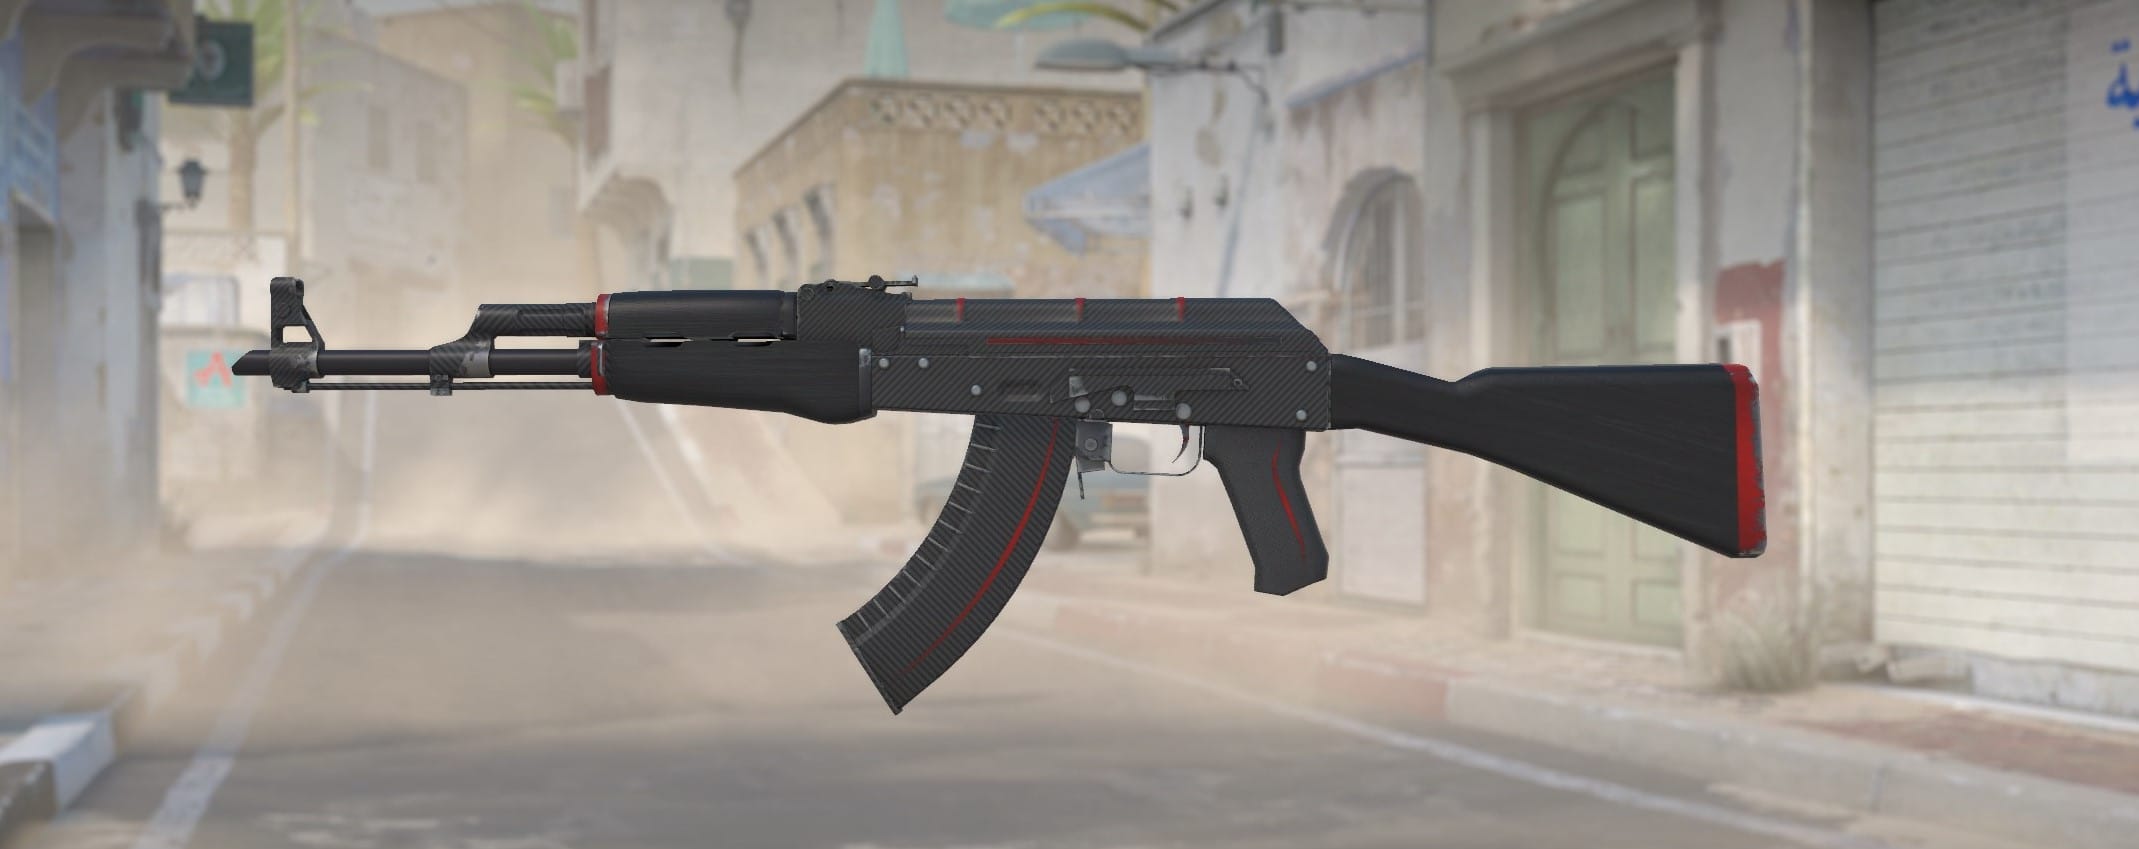 Linea rossa dell'AK-47